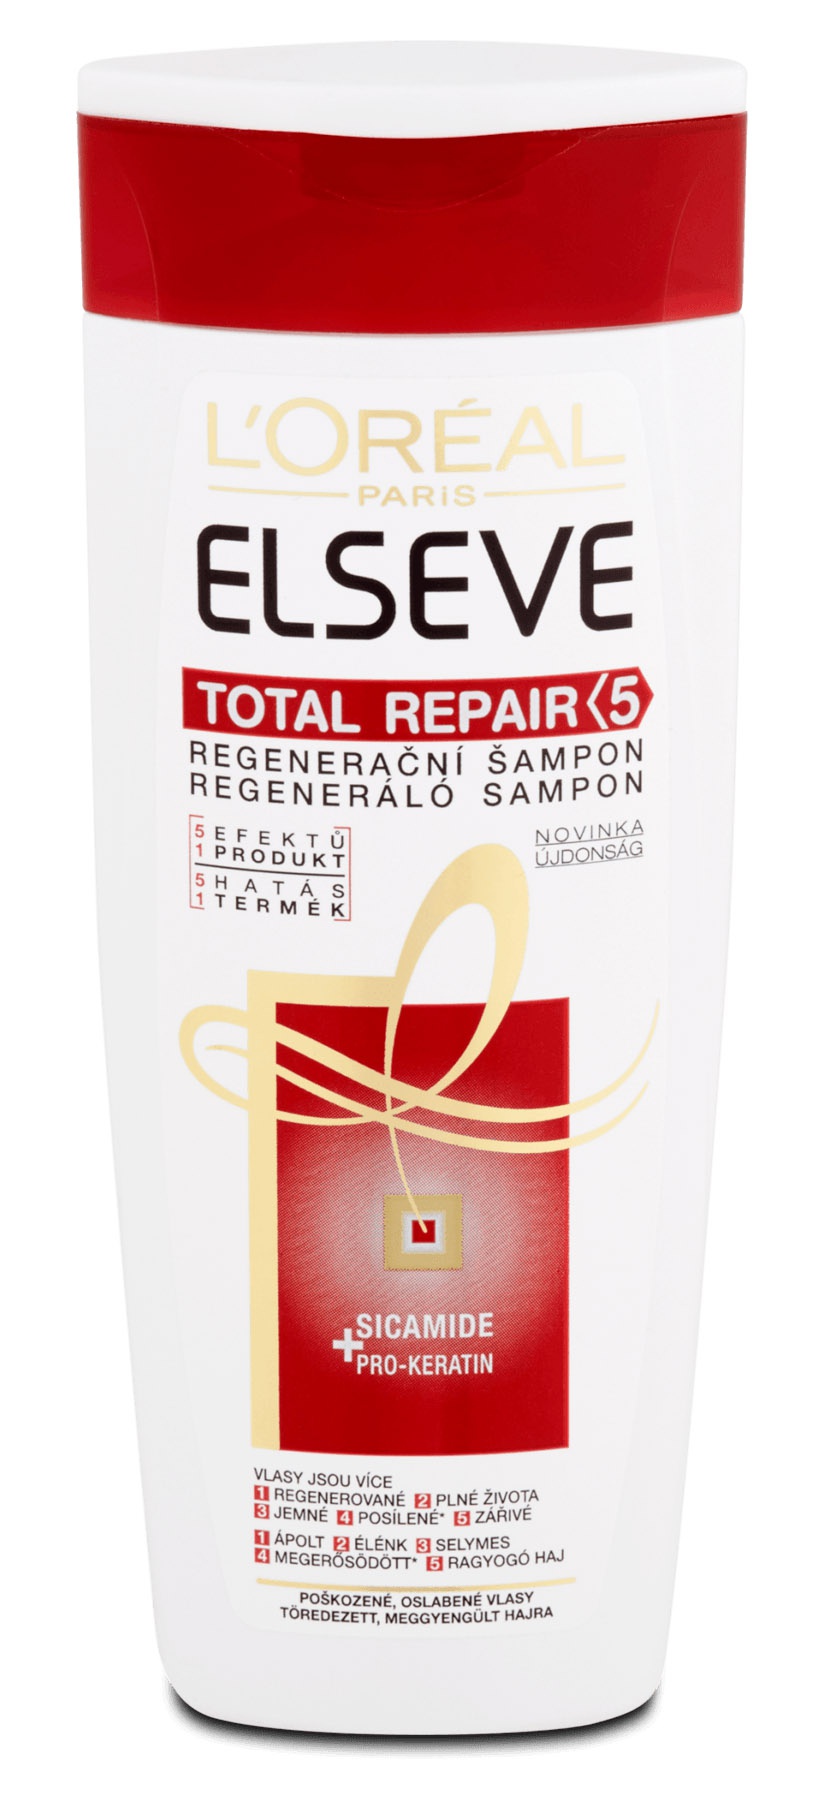 L'Oreal Elseve Total Repair 5 Shampoo